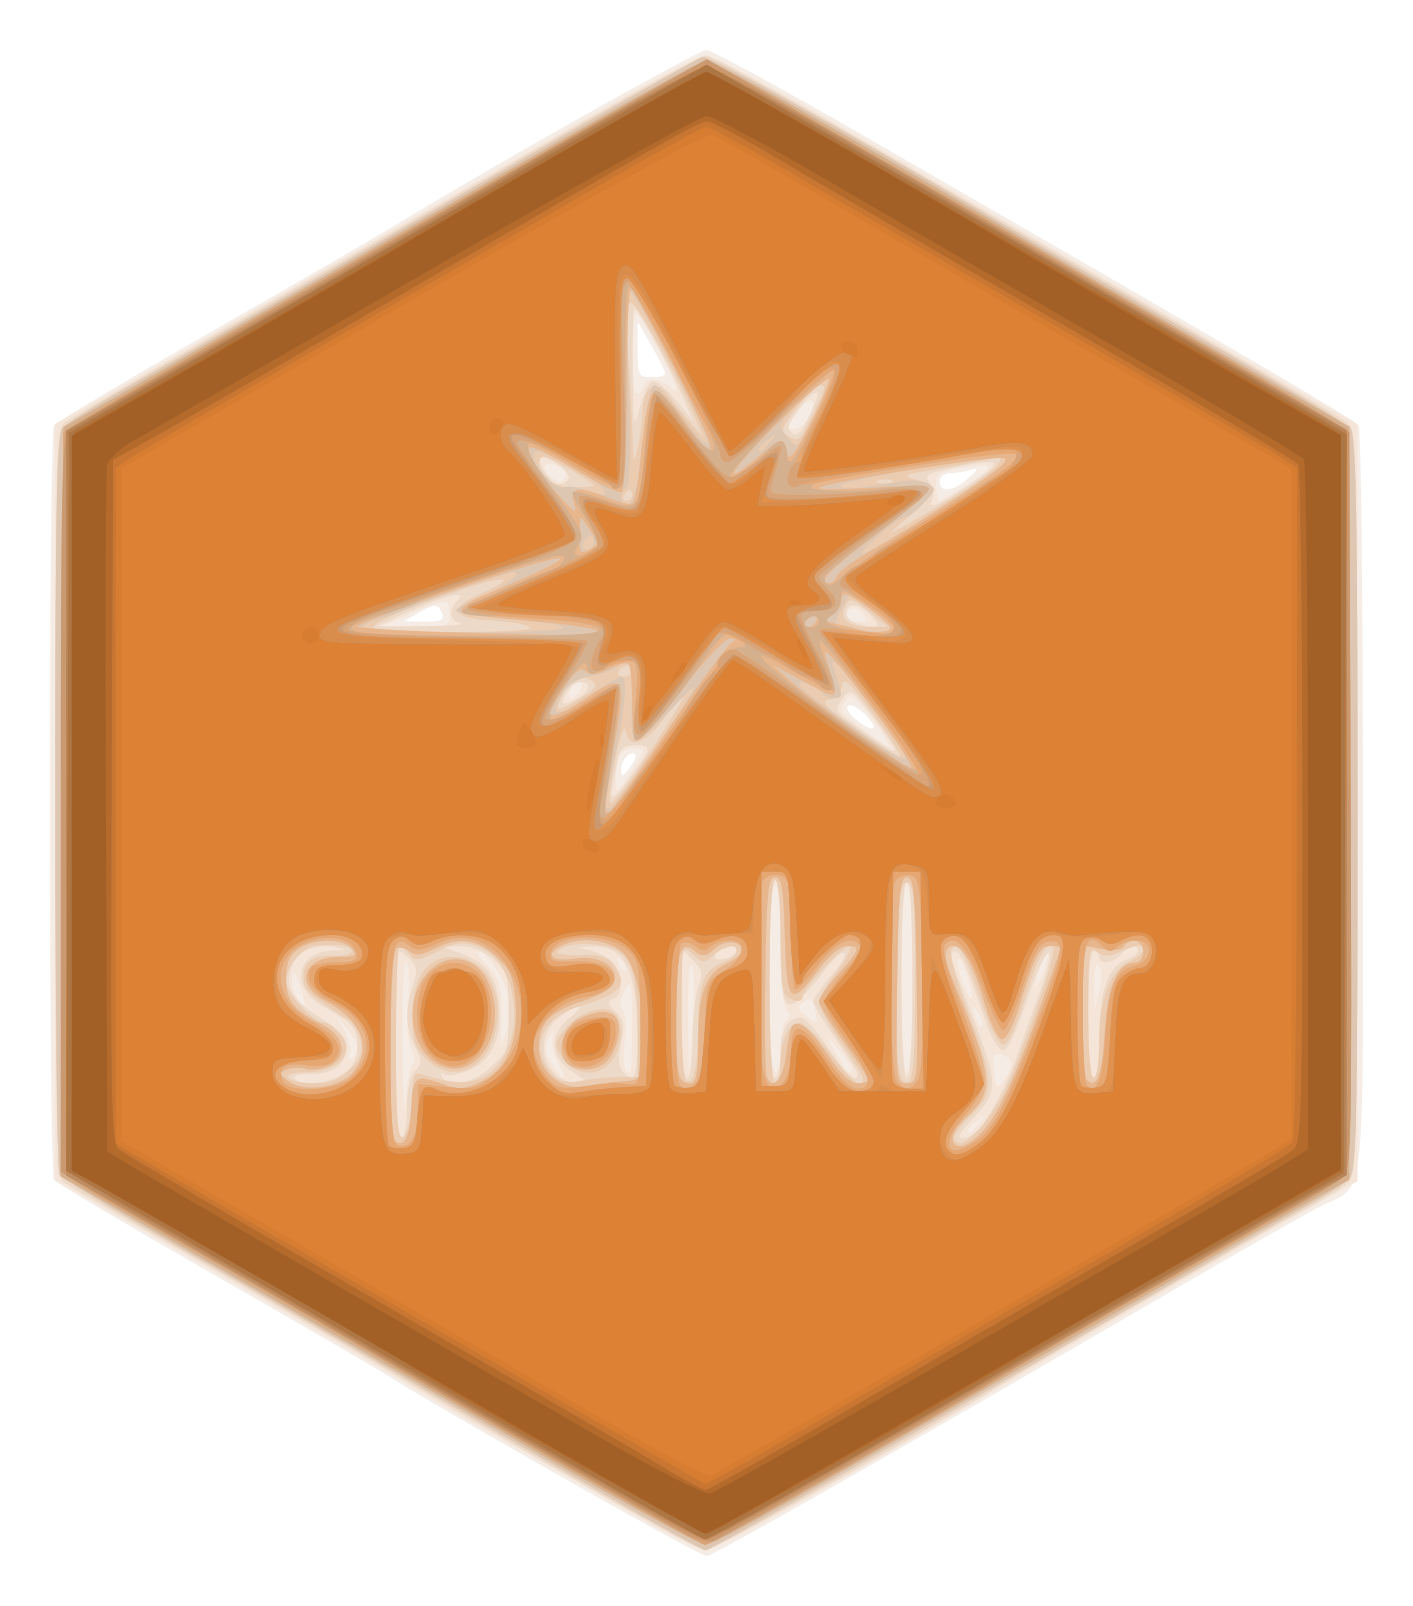 SparklyR 